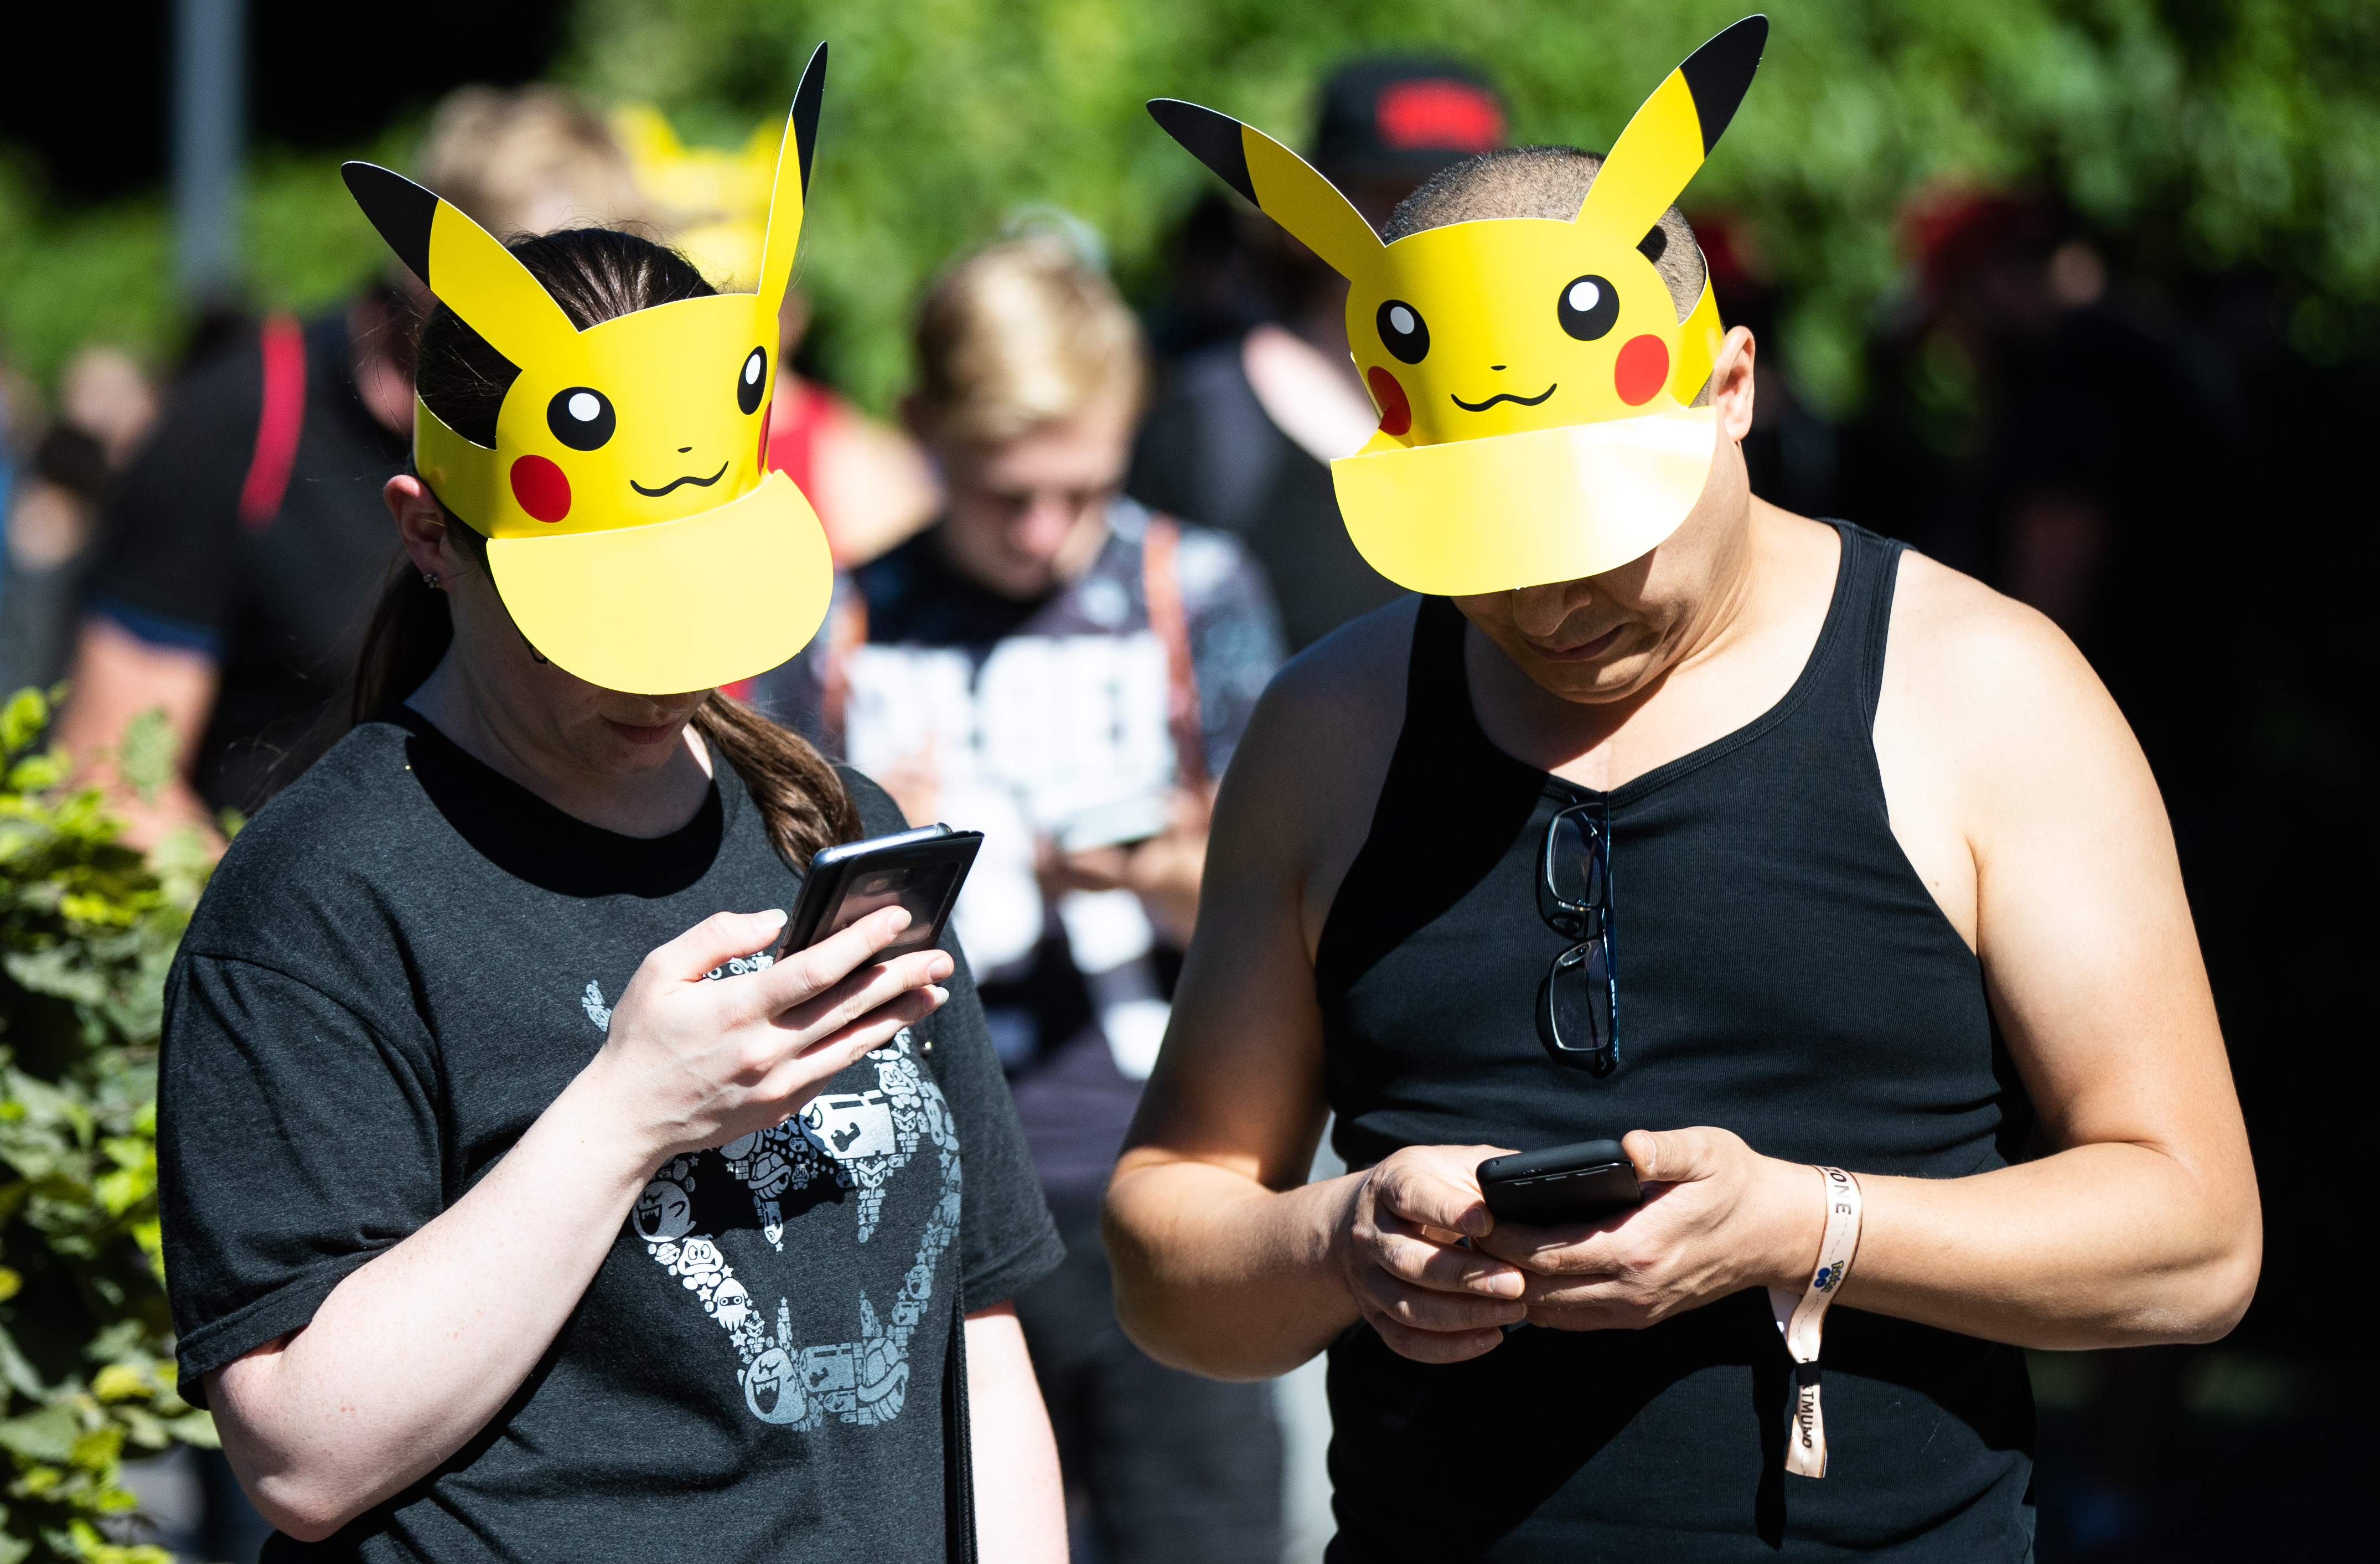 Comienza el mayor festival “Pokémon Go” de Europa